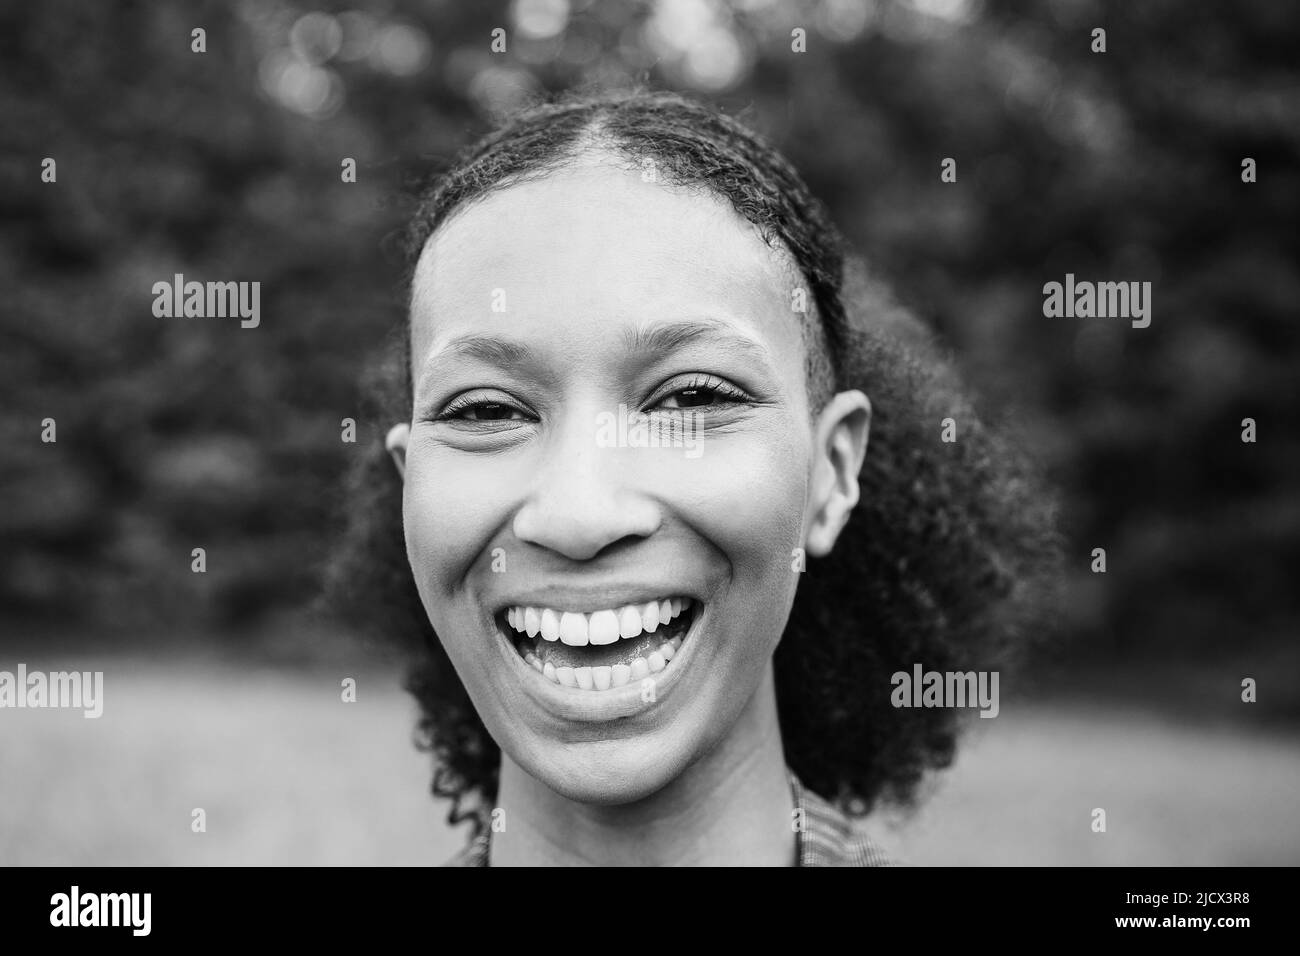 Junge afrikanische Mädchen lächelt vor der Kamera im Freien - Fokus auf Gesicht - Schwarz-Weiß-Schnitt Stockfoto